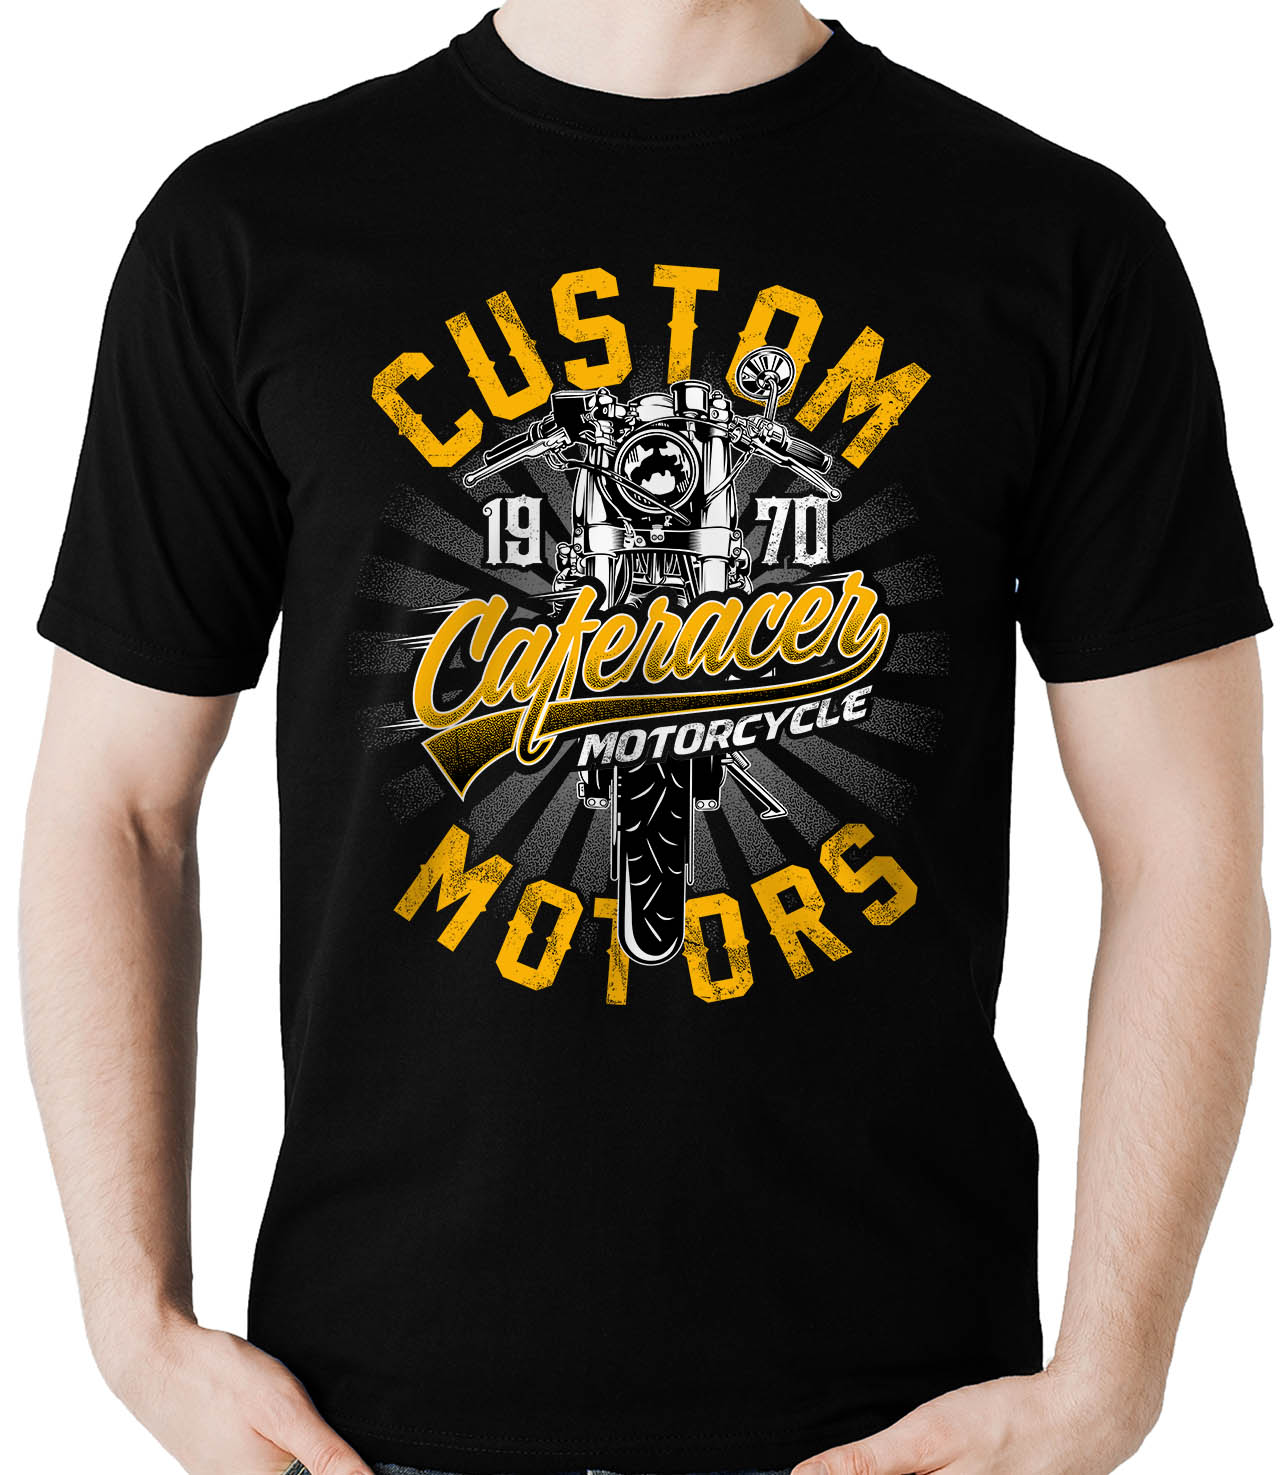 Camiseta Caferacer custom - Motociclista Moto motoqueiro